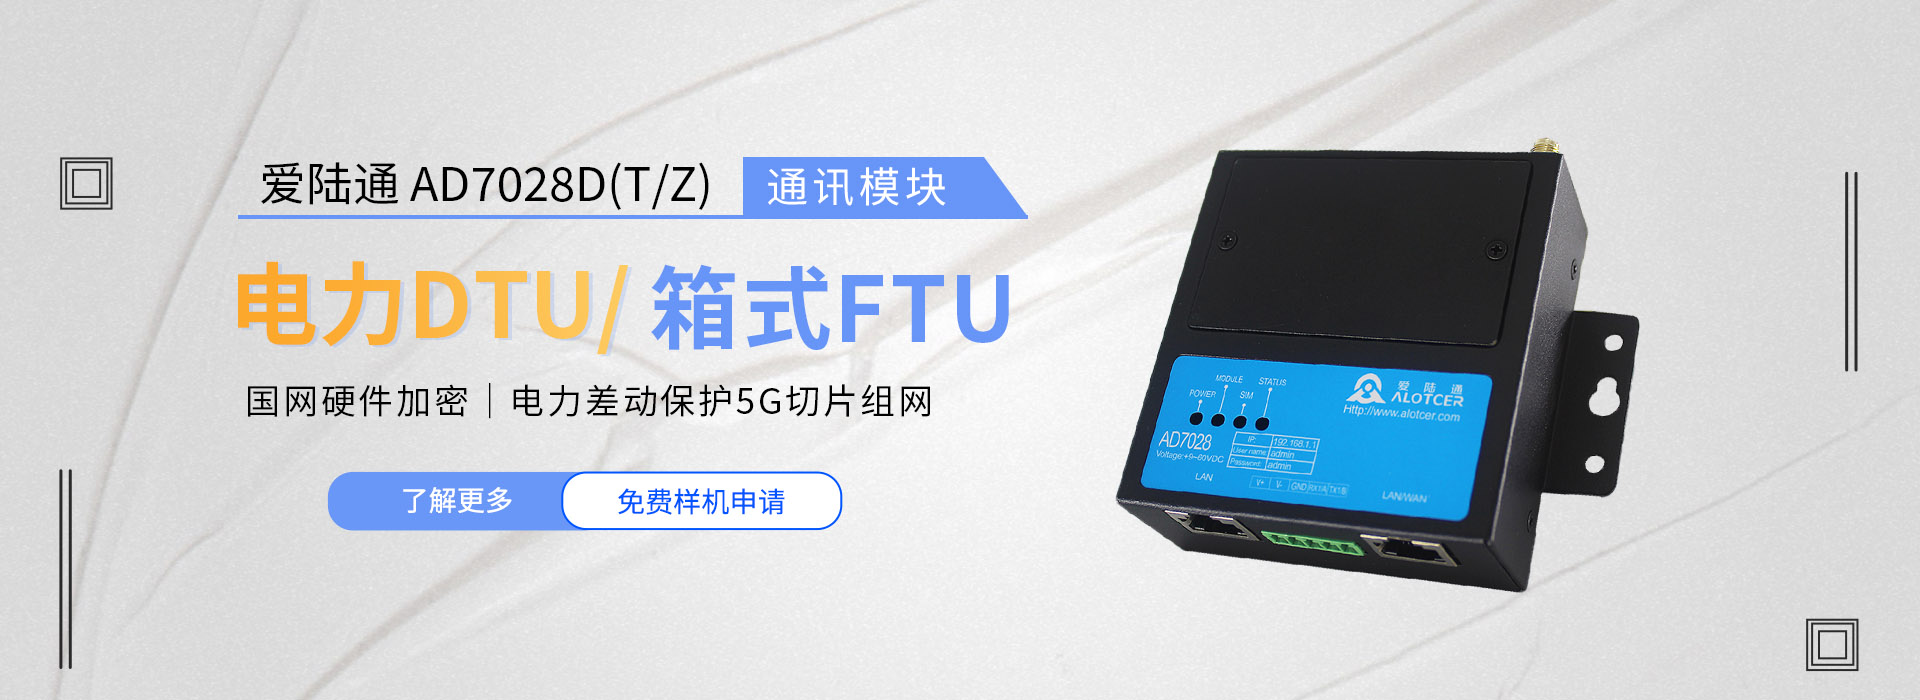 爱陆通电力DTU/箱式FTU通讯模块AD7028D(T/Z)